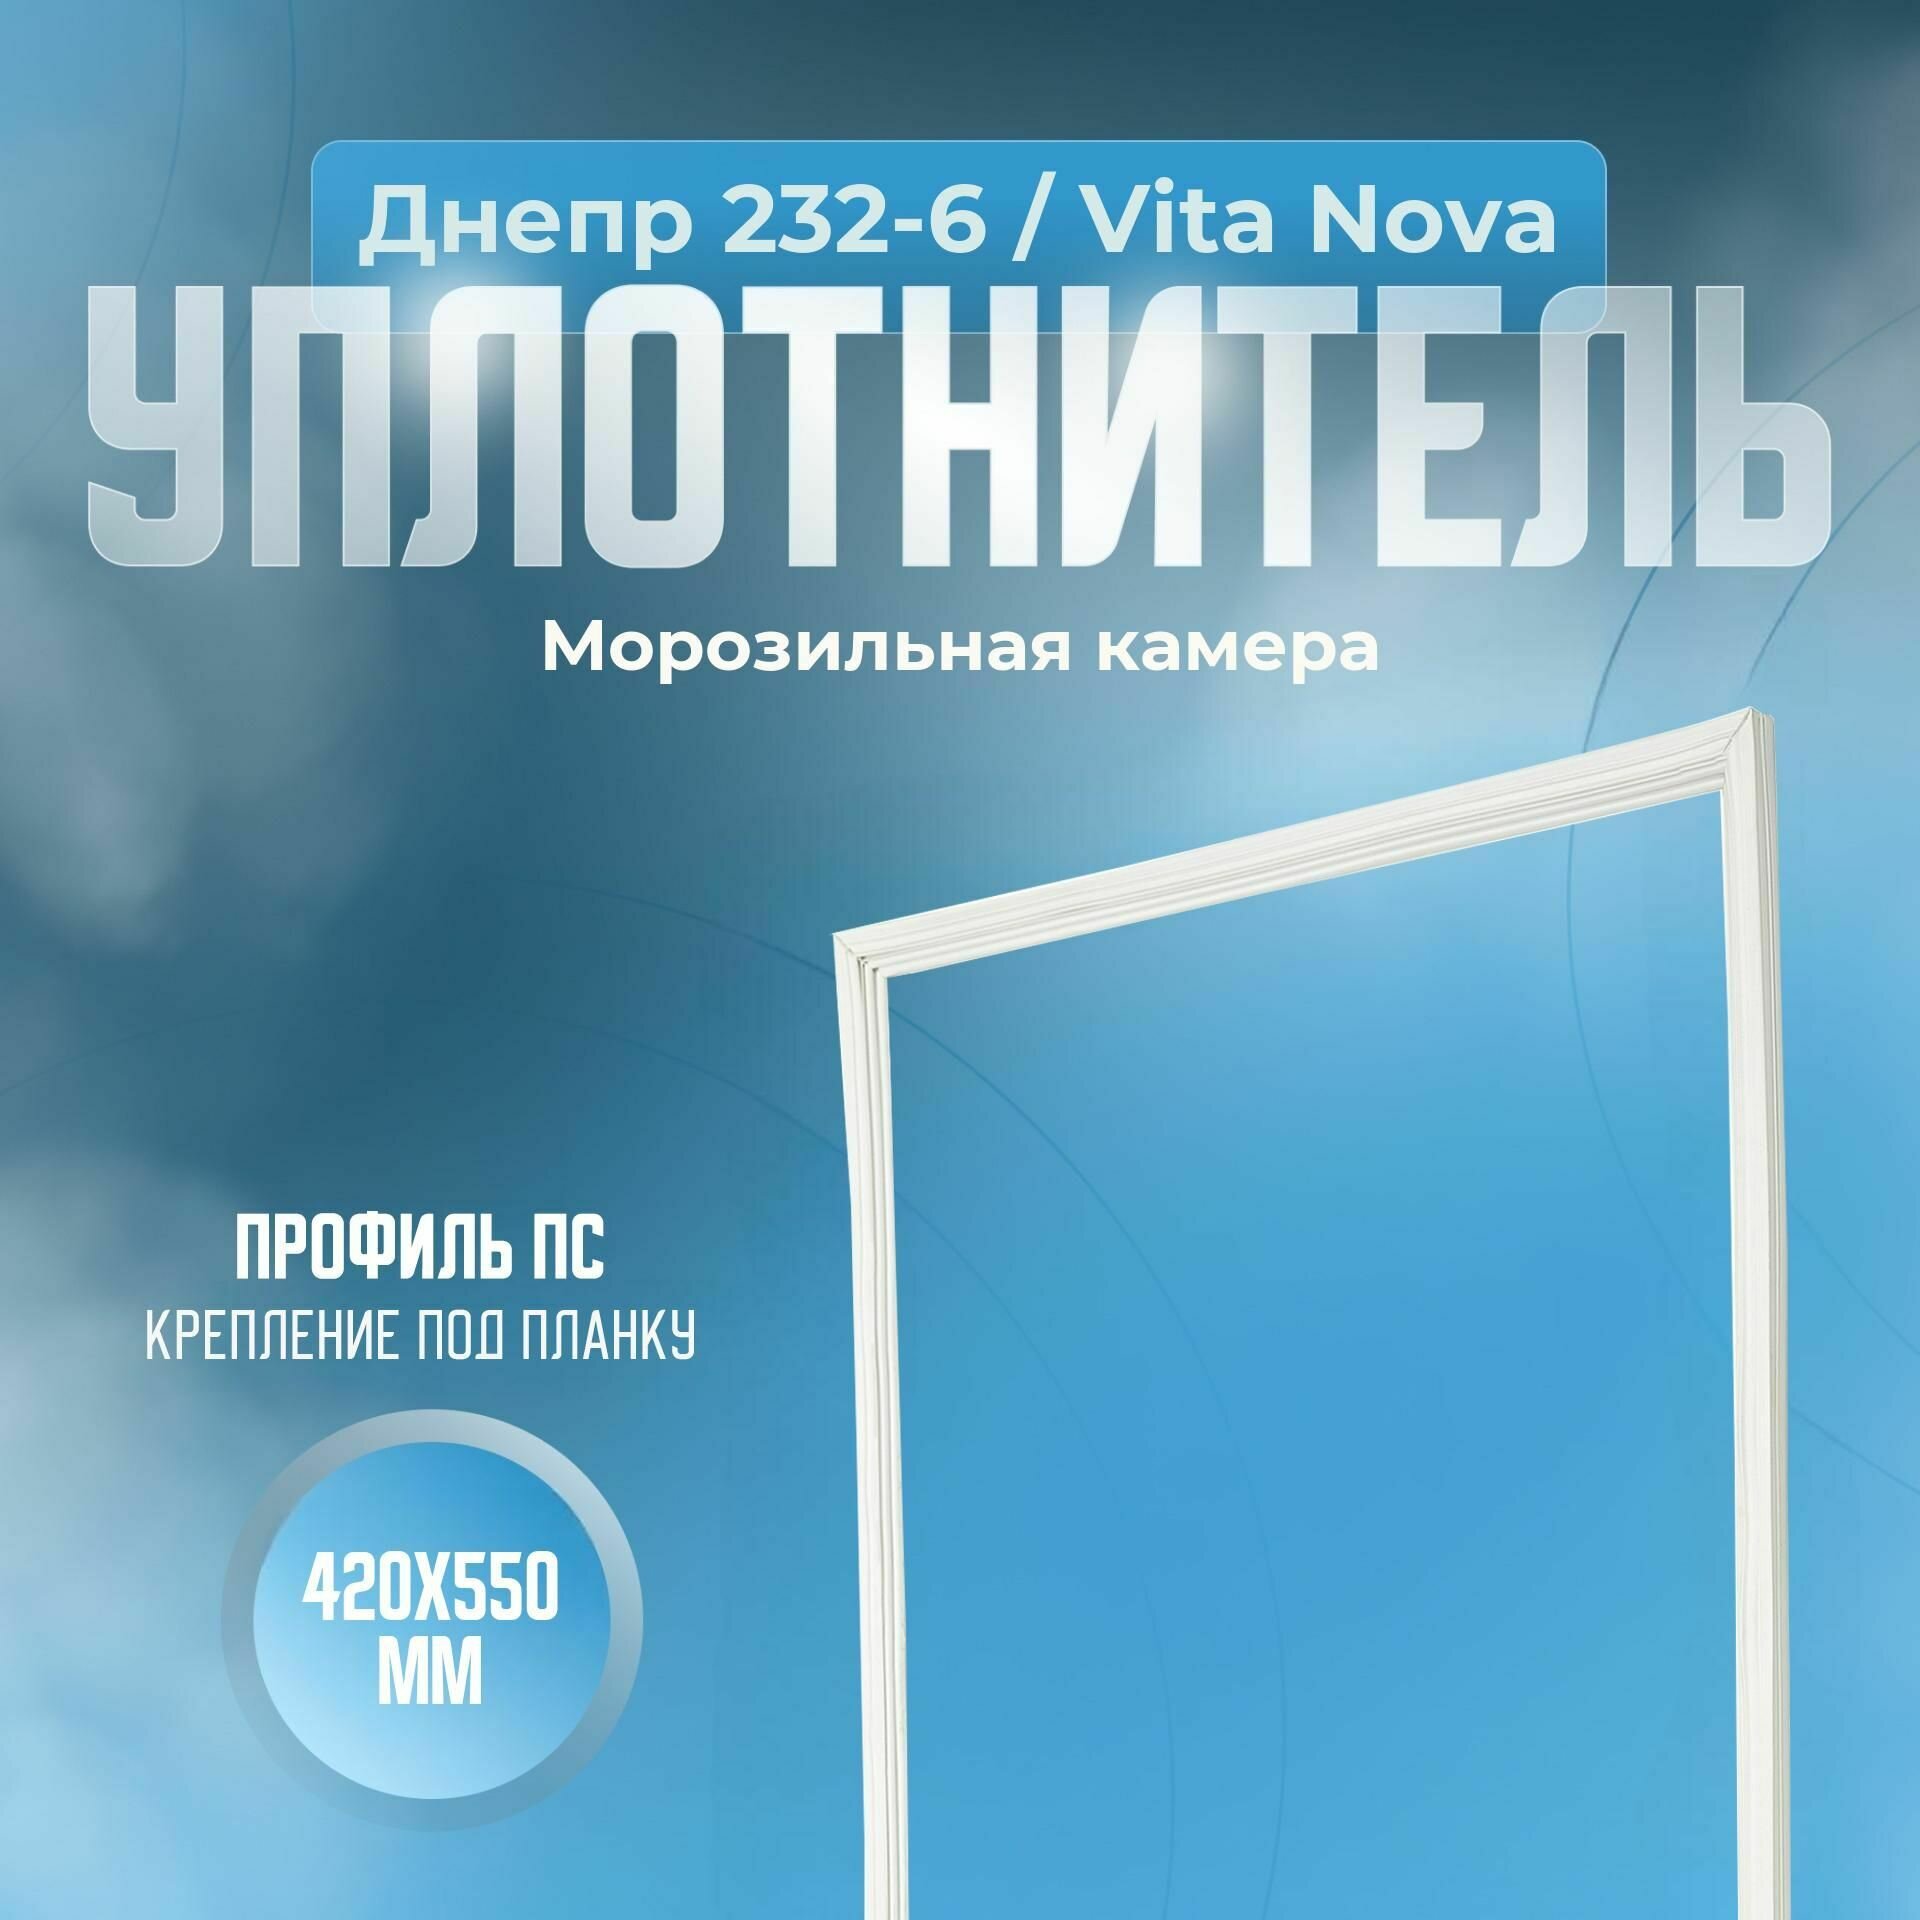 Уплотнитель Днепр 232-6 / Vita Nova. (Холодильная камера) Размер - 880x550 мм. ПС